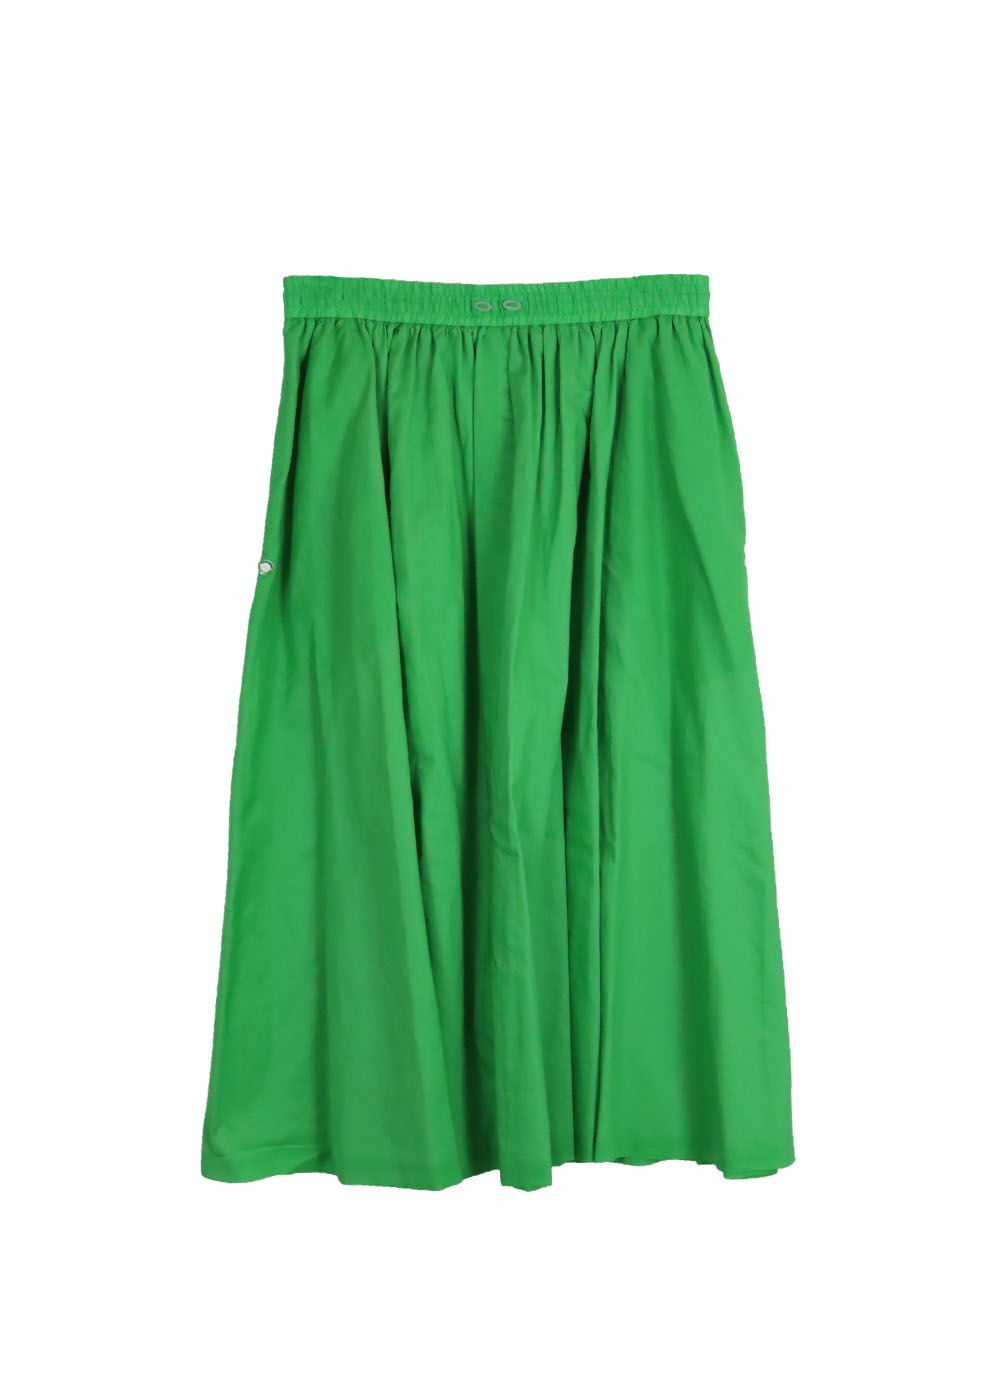 16500円セール アウトレットオンライン ドゥロワー Drawer スカート